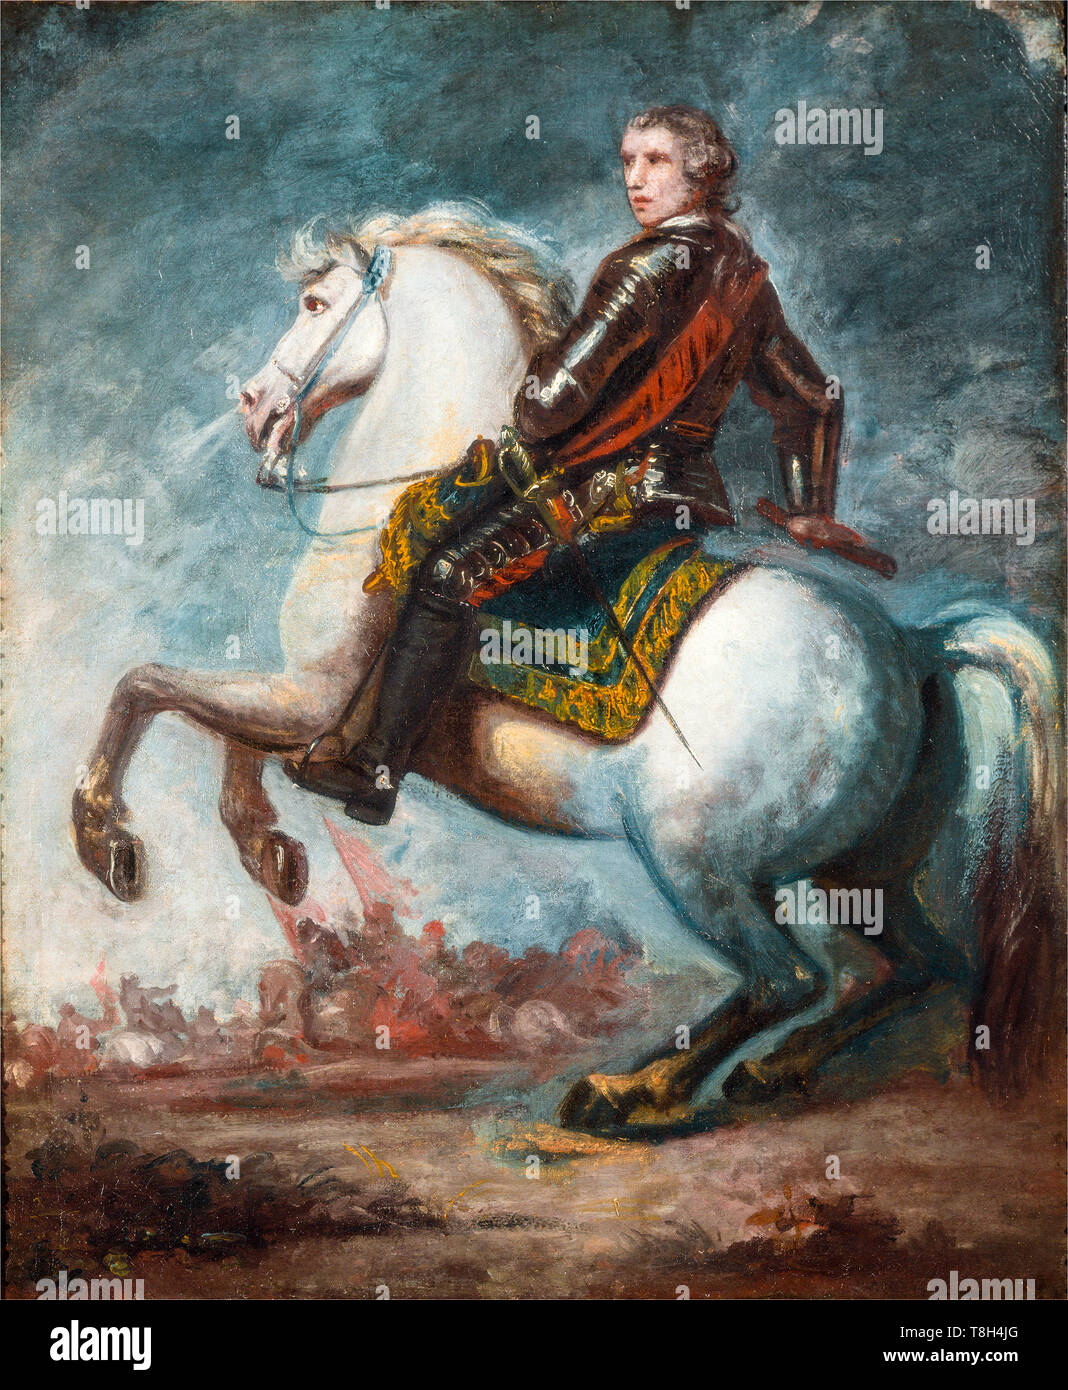 Sir Joshua Reynolds, Portrait équestre de Field-Marshall RT. Sir Jeffrey Amherst (1717-1797), officier de l'armée britannique, commandant en chef, Amérique du Nord, peint vers 1768 Banque D'Images